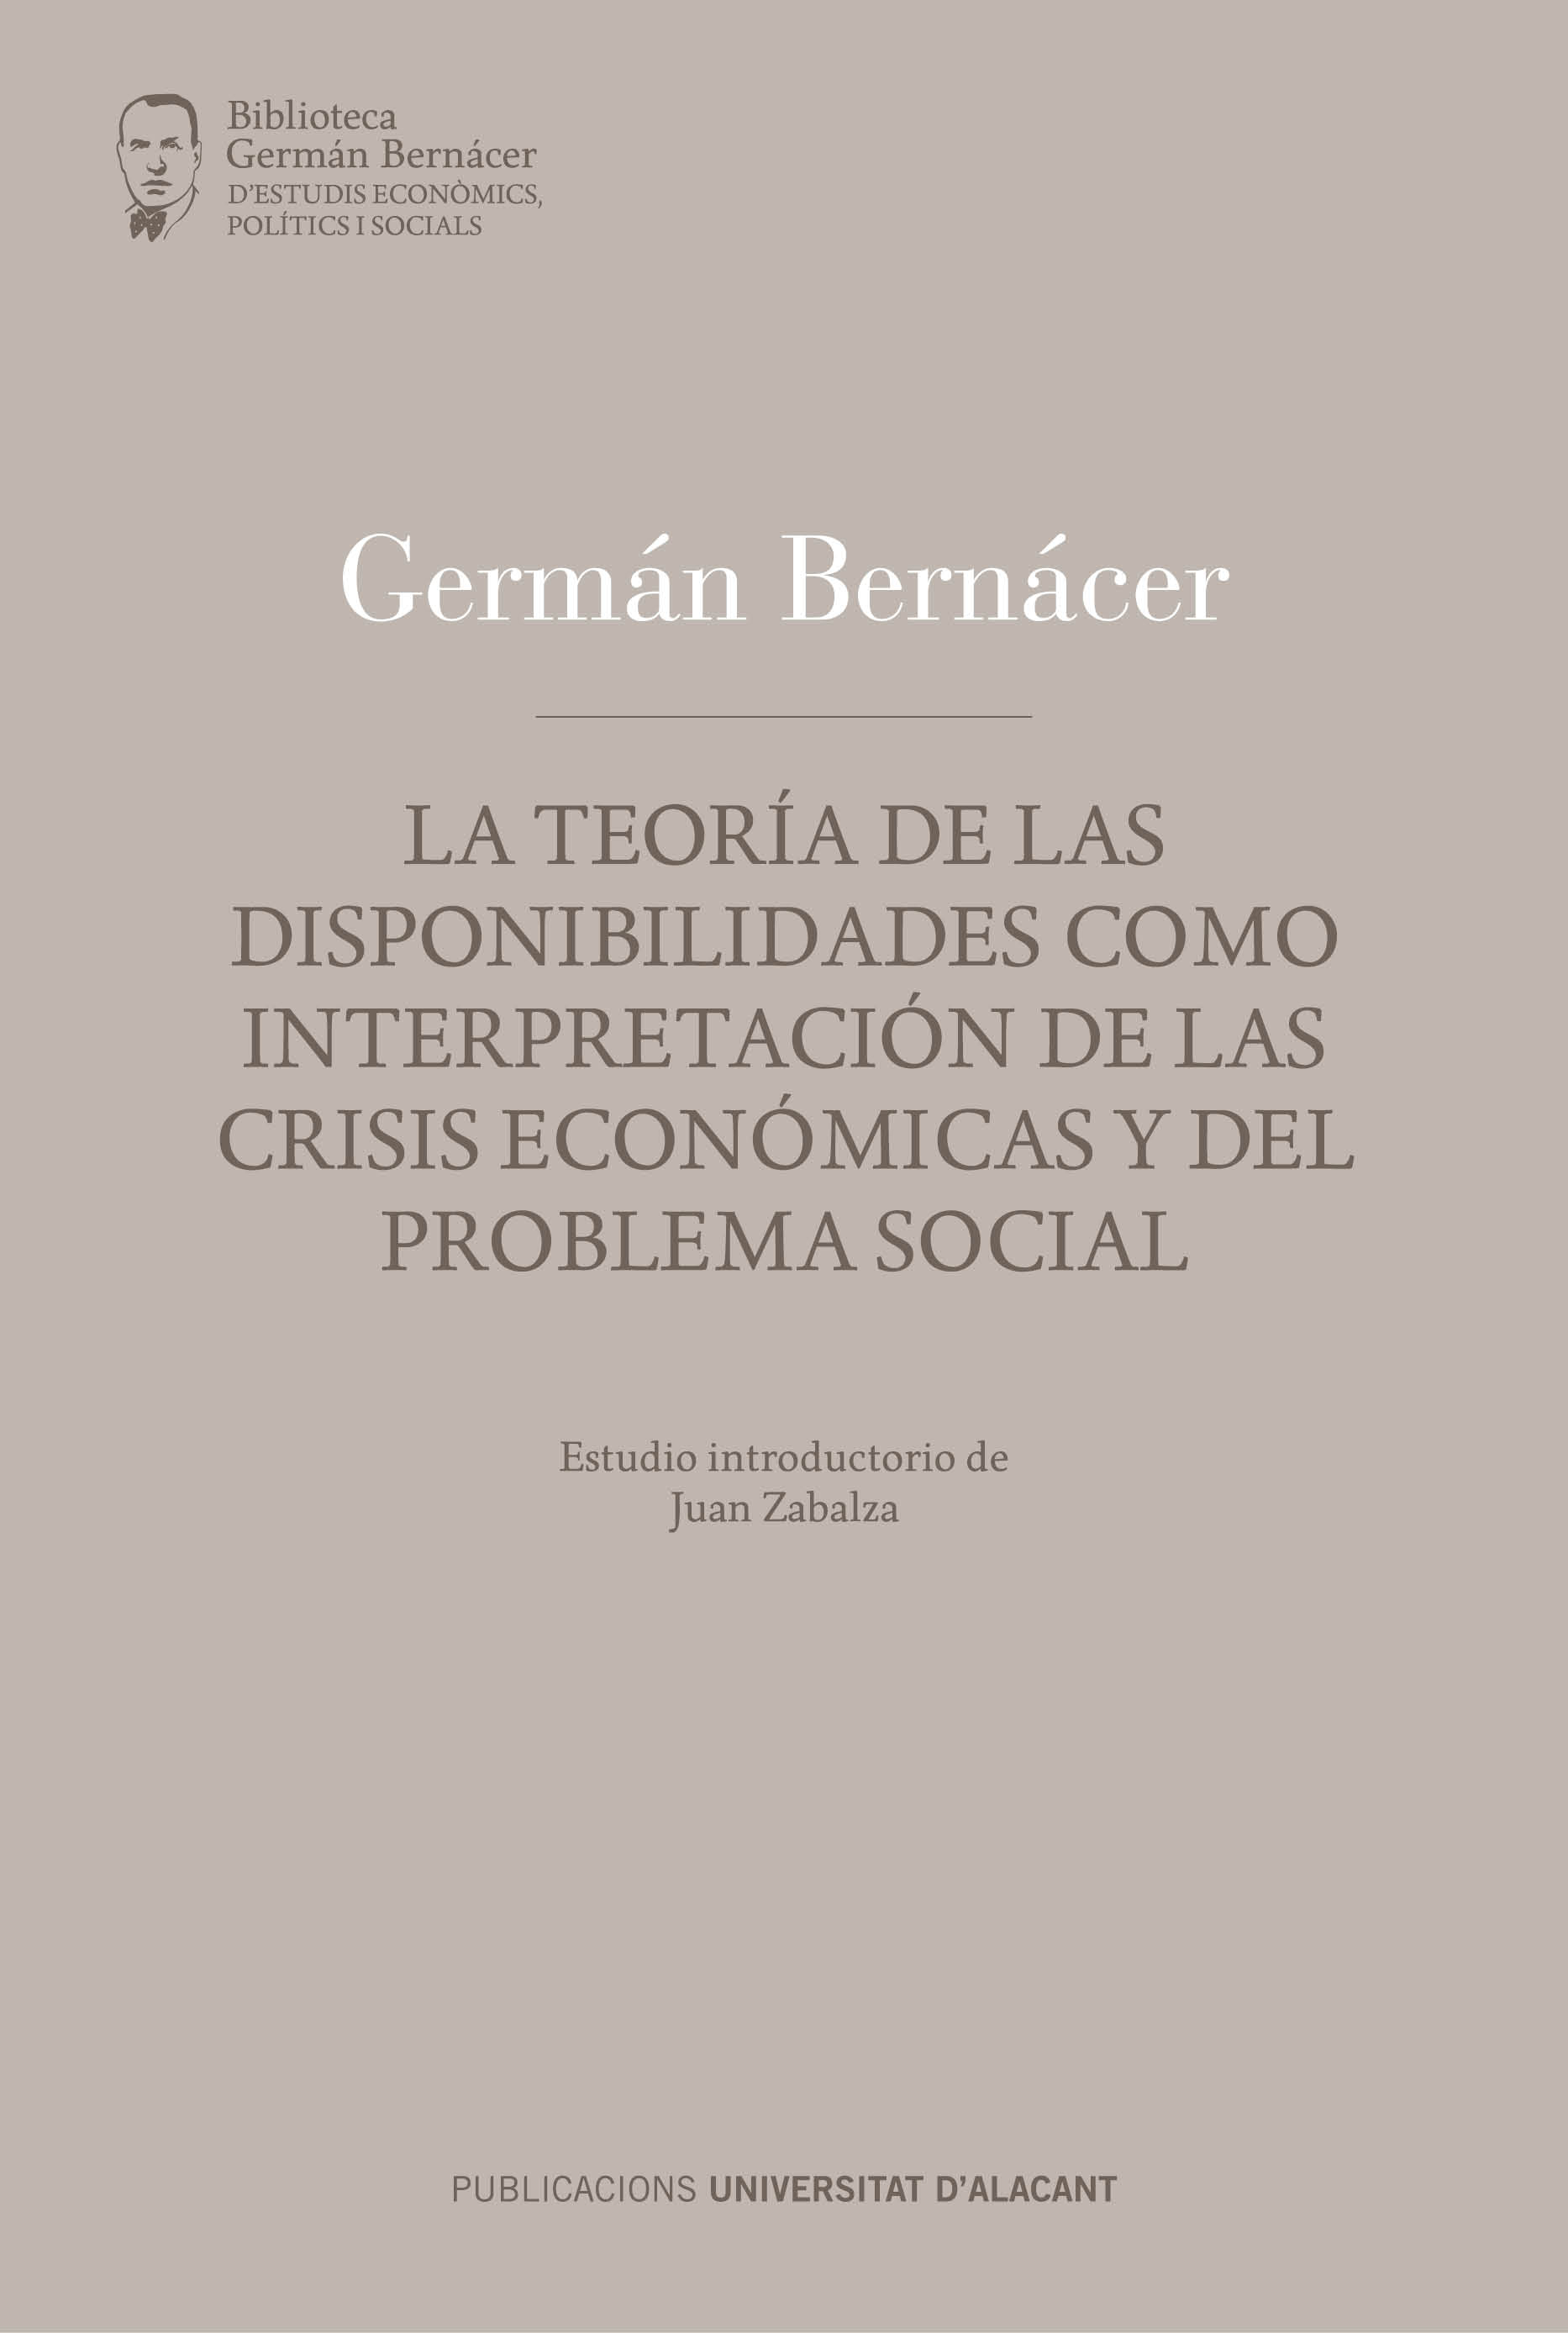 La teoría de las disponibilidades, como interpretación de las crisis económicas y del problema social